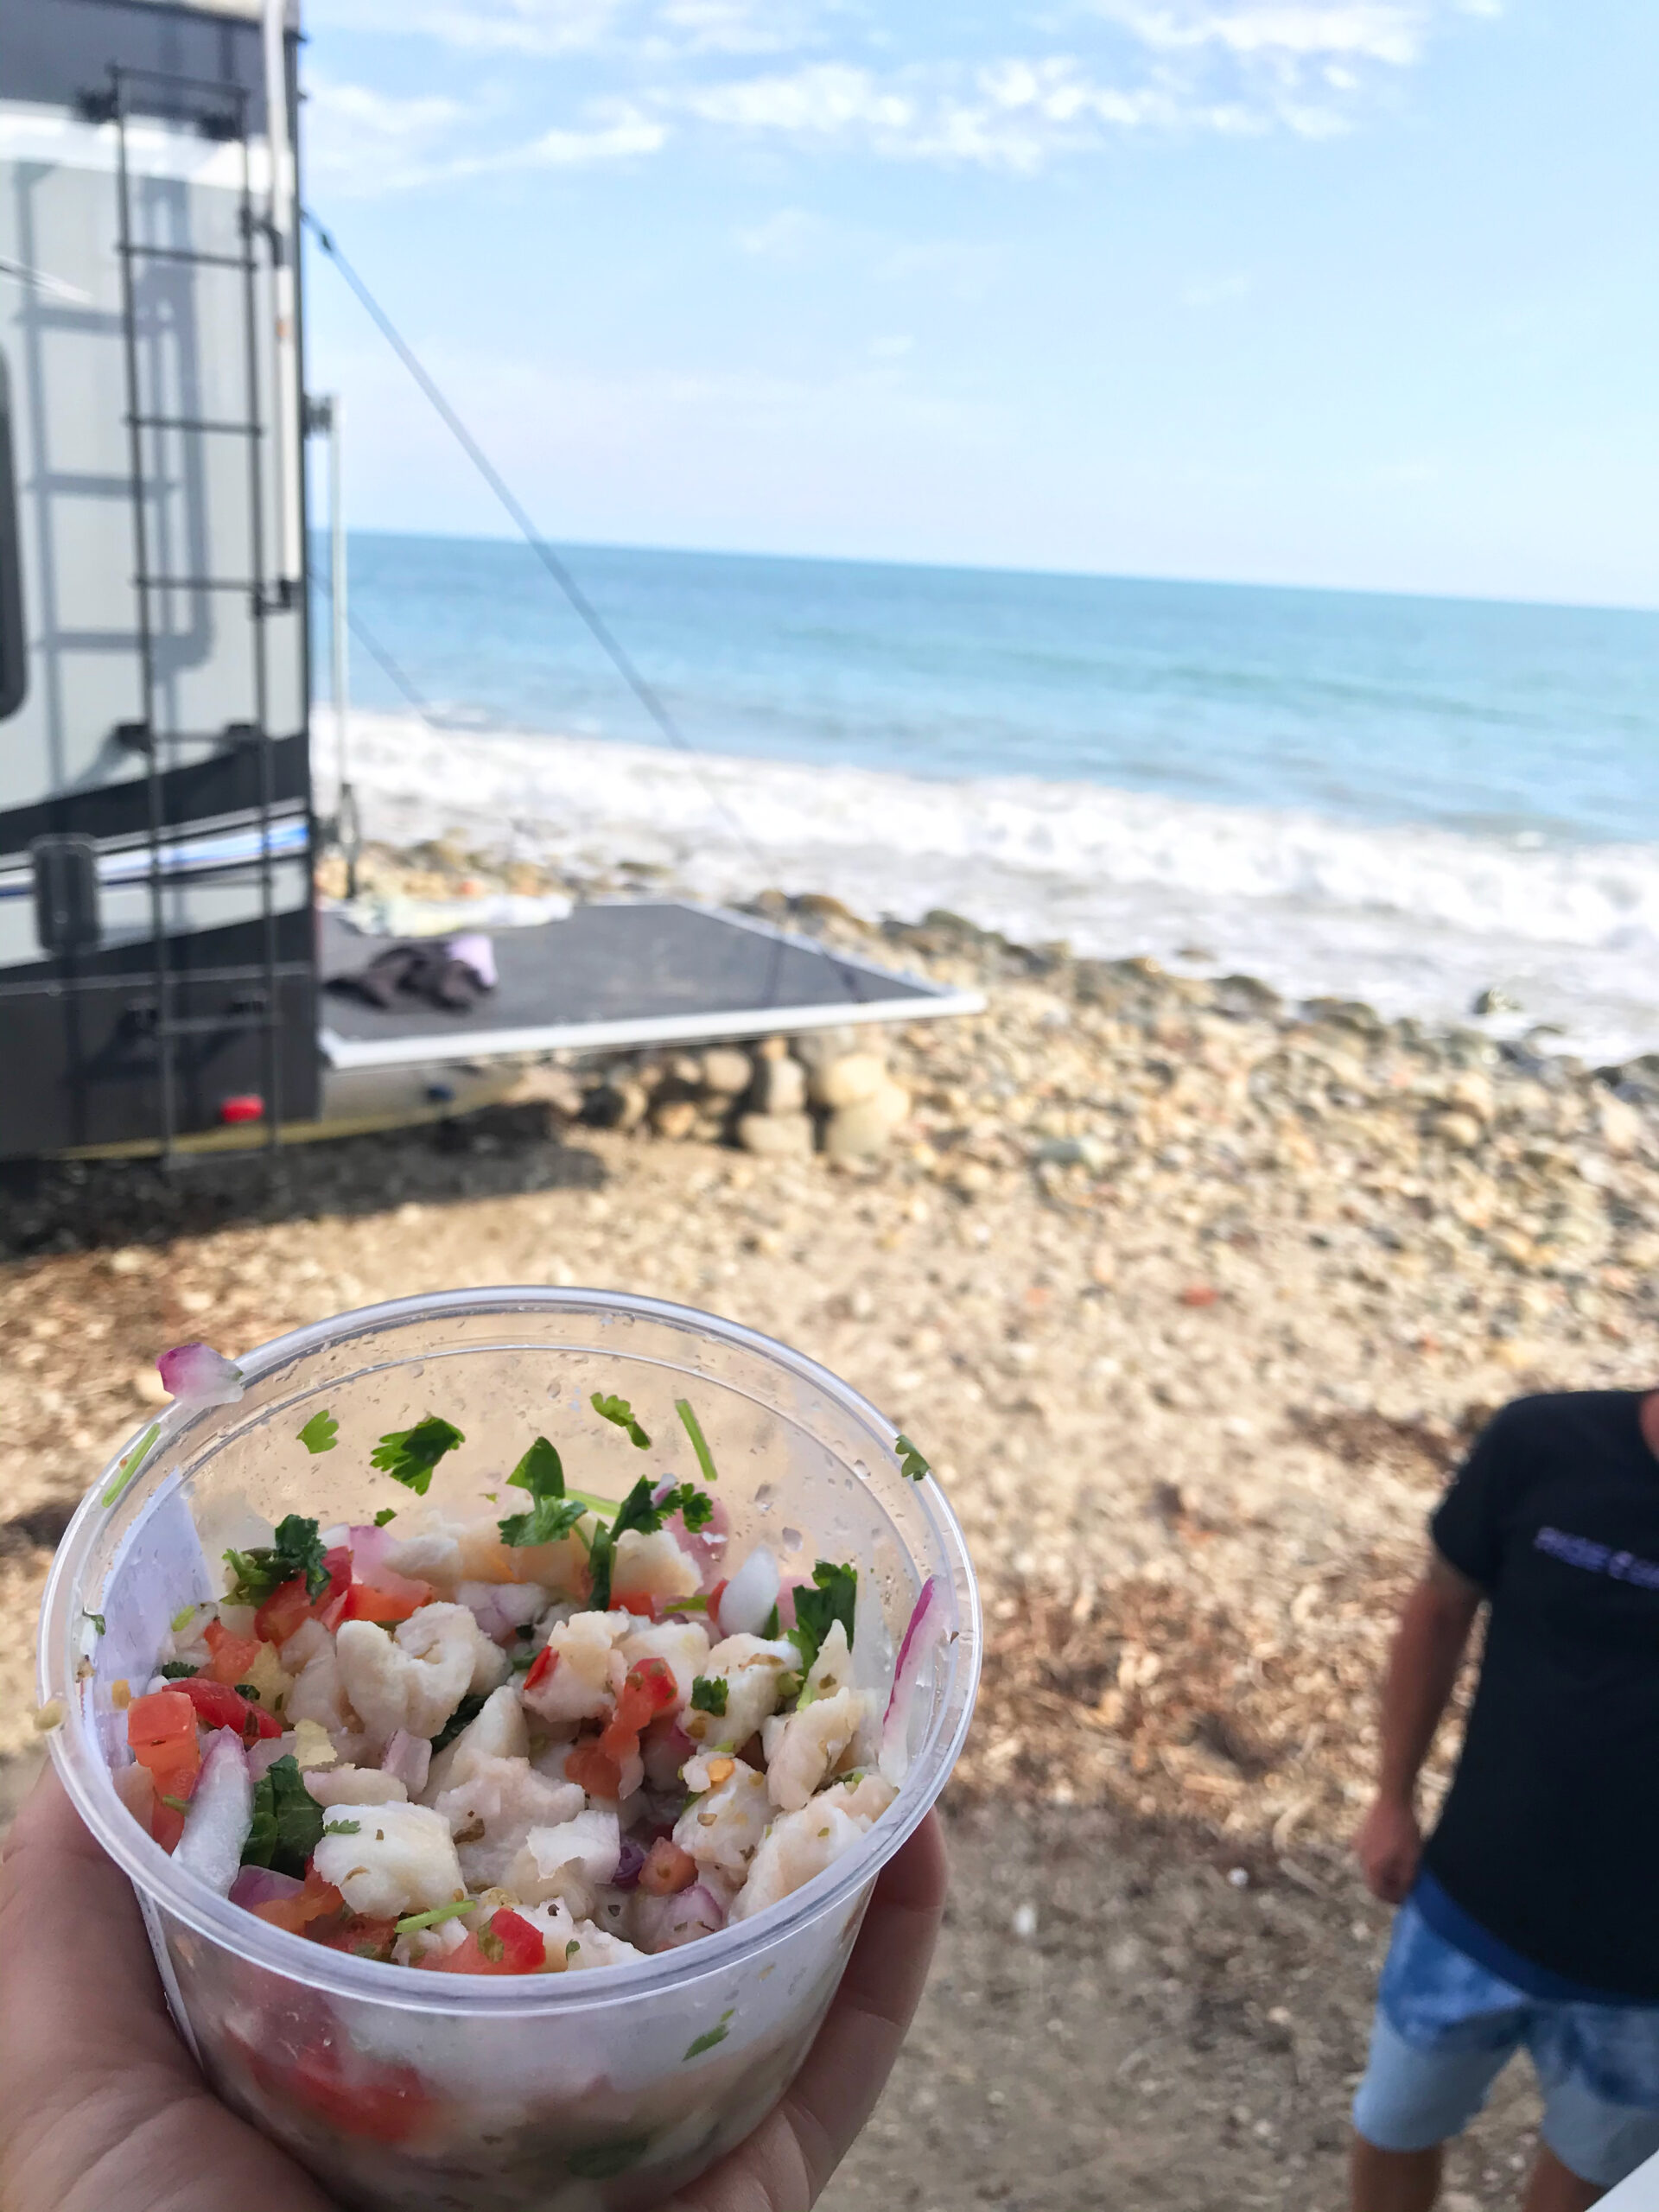 Ceviche on the beach